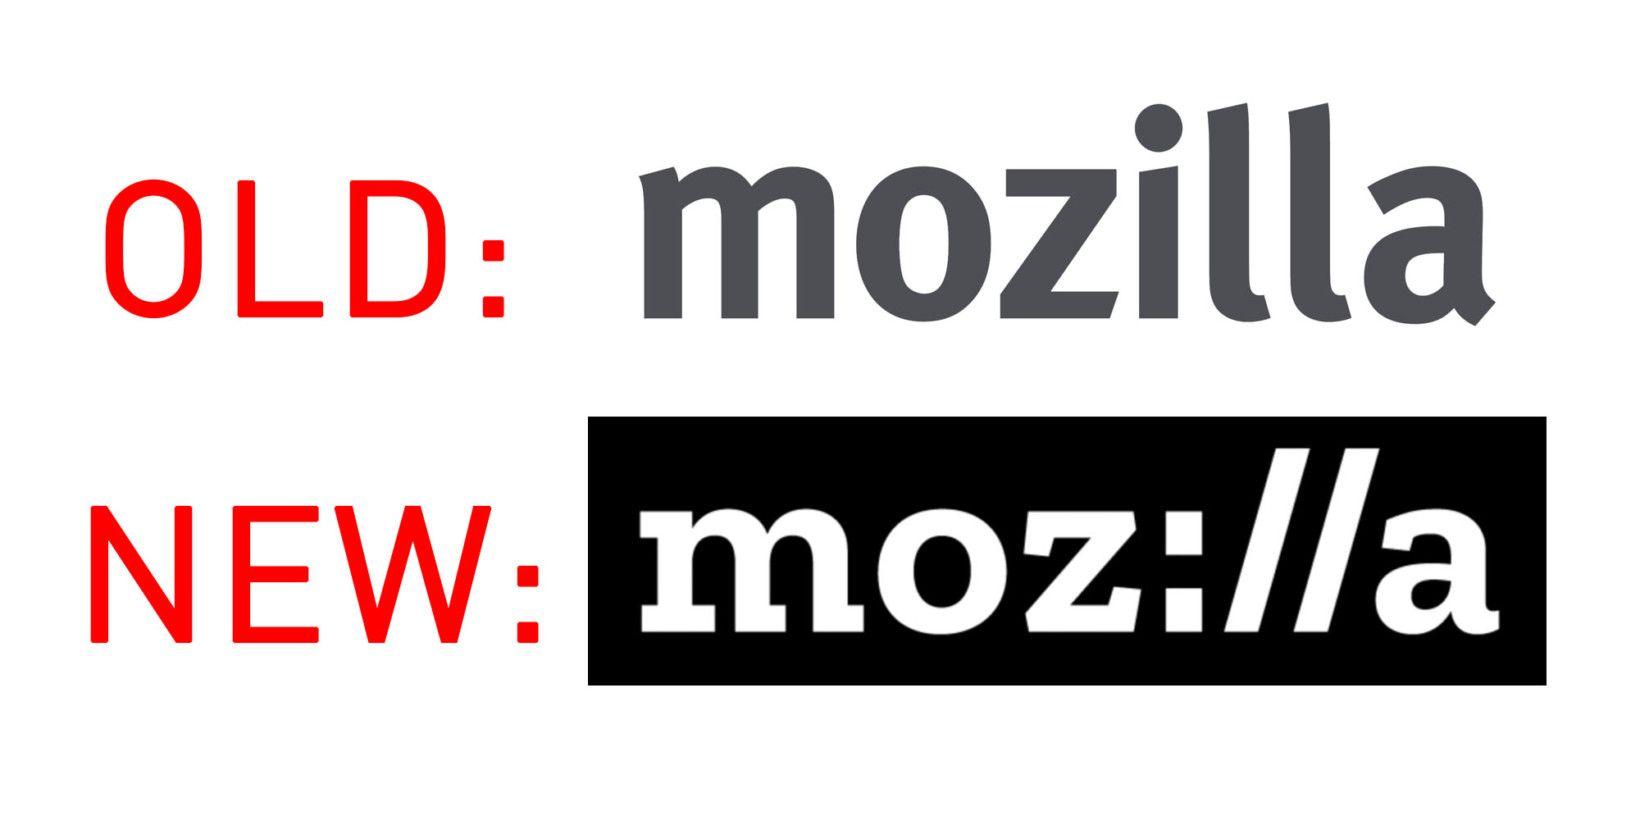 Mozzila Logo - Mozilla just revealed a minimalist new logo